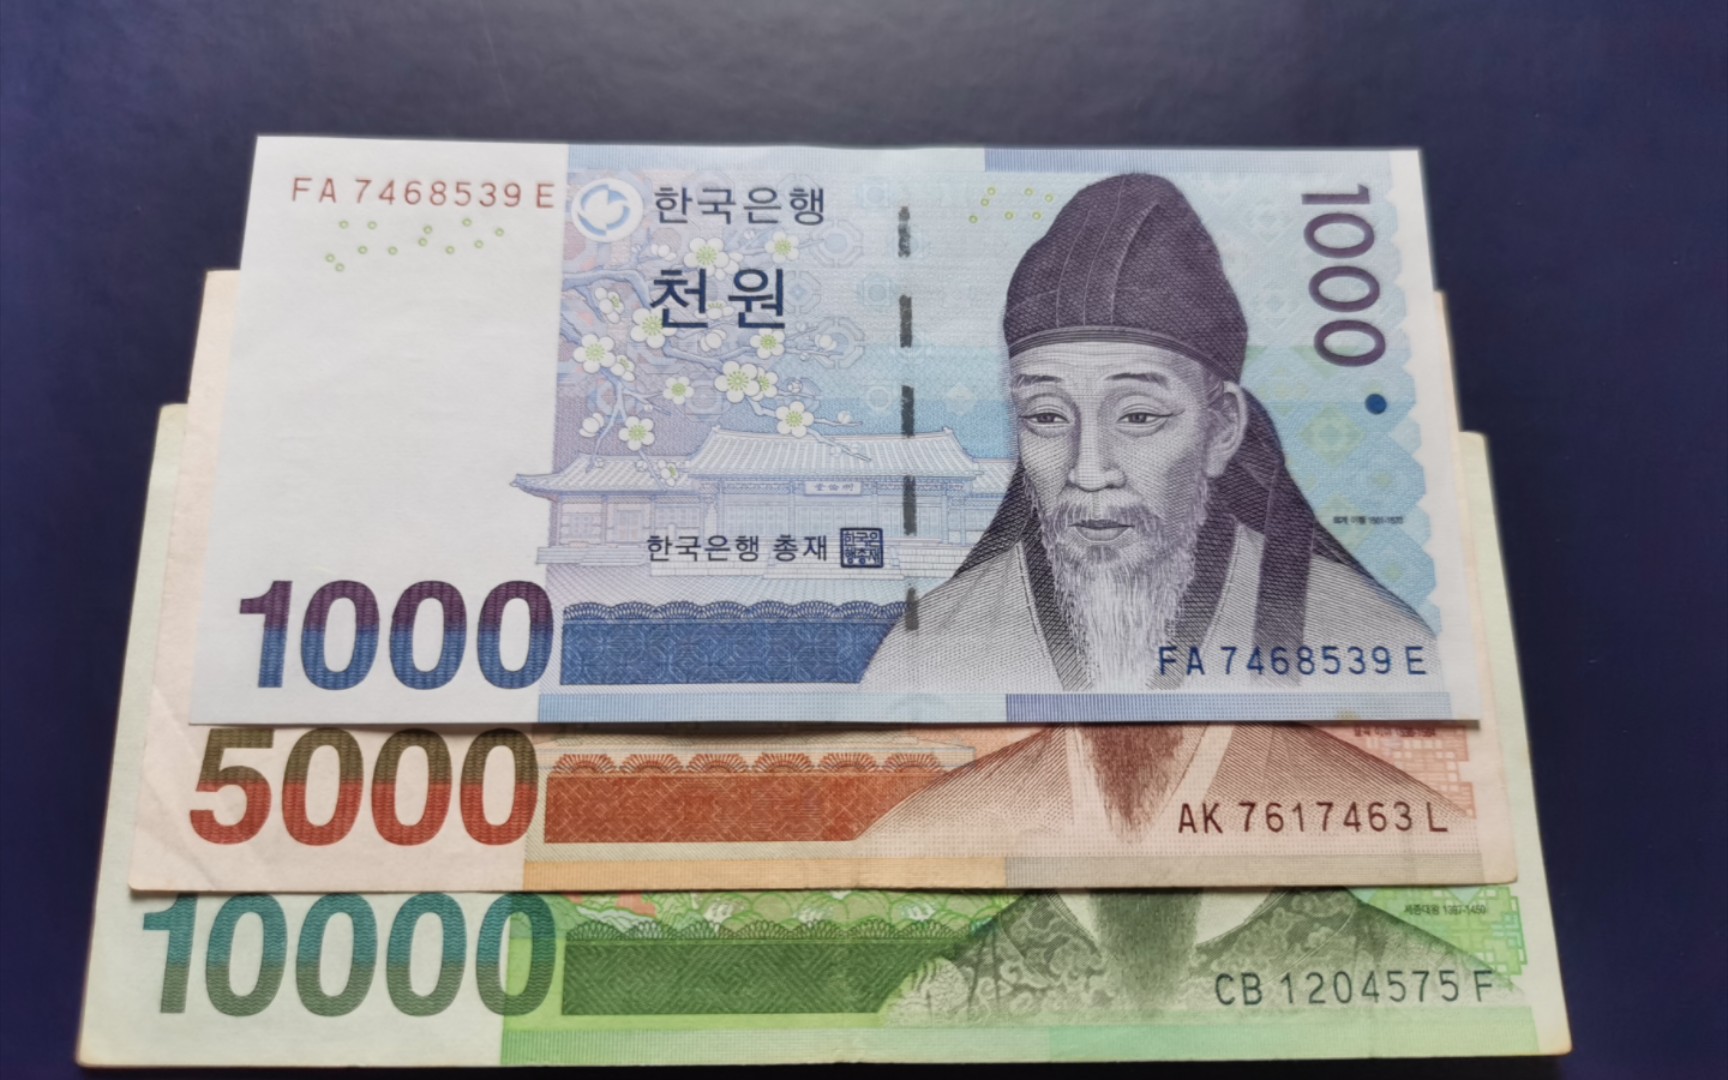 韩国韩元纸币图案&防伪设计简介(1000/5000/10000)